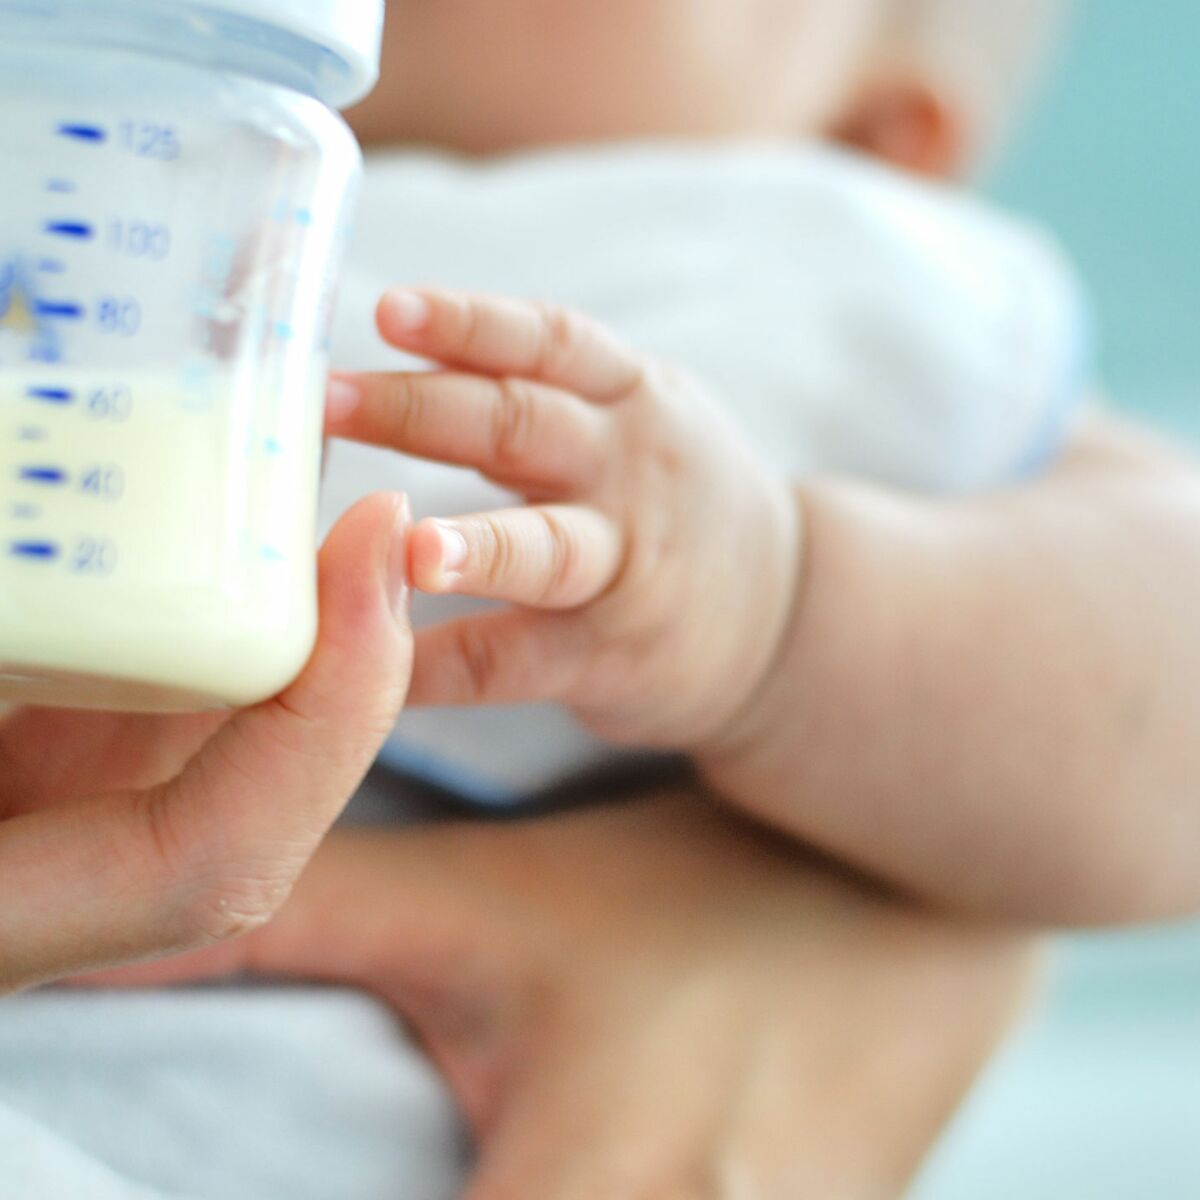 Comment bien préparer un biberon à bébé ? Doses & quantité de lait